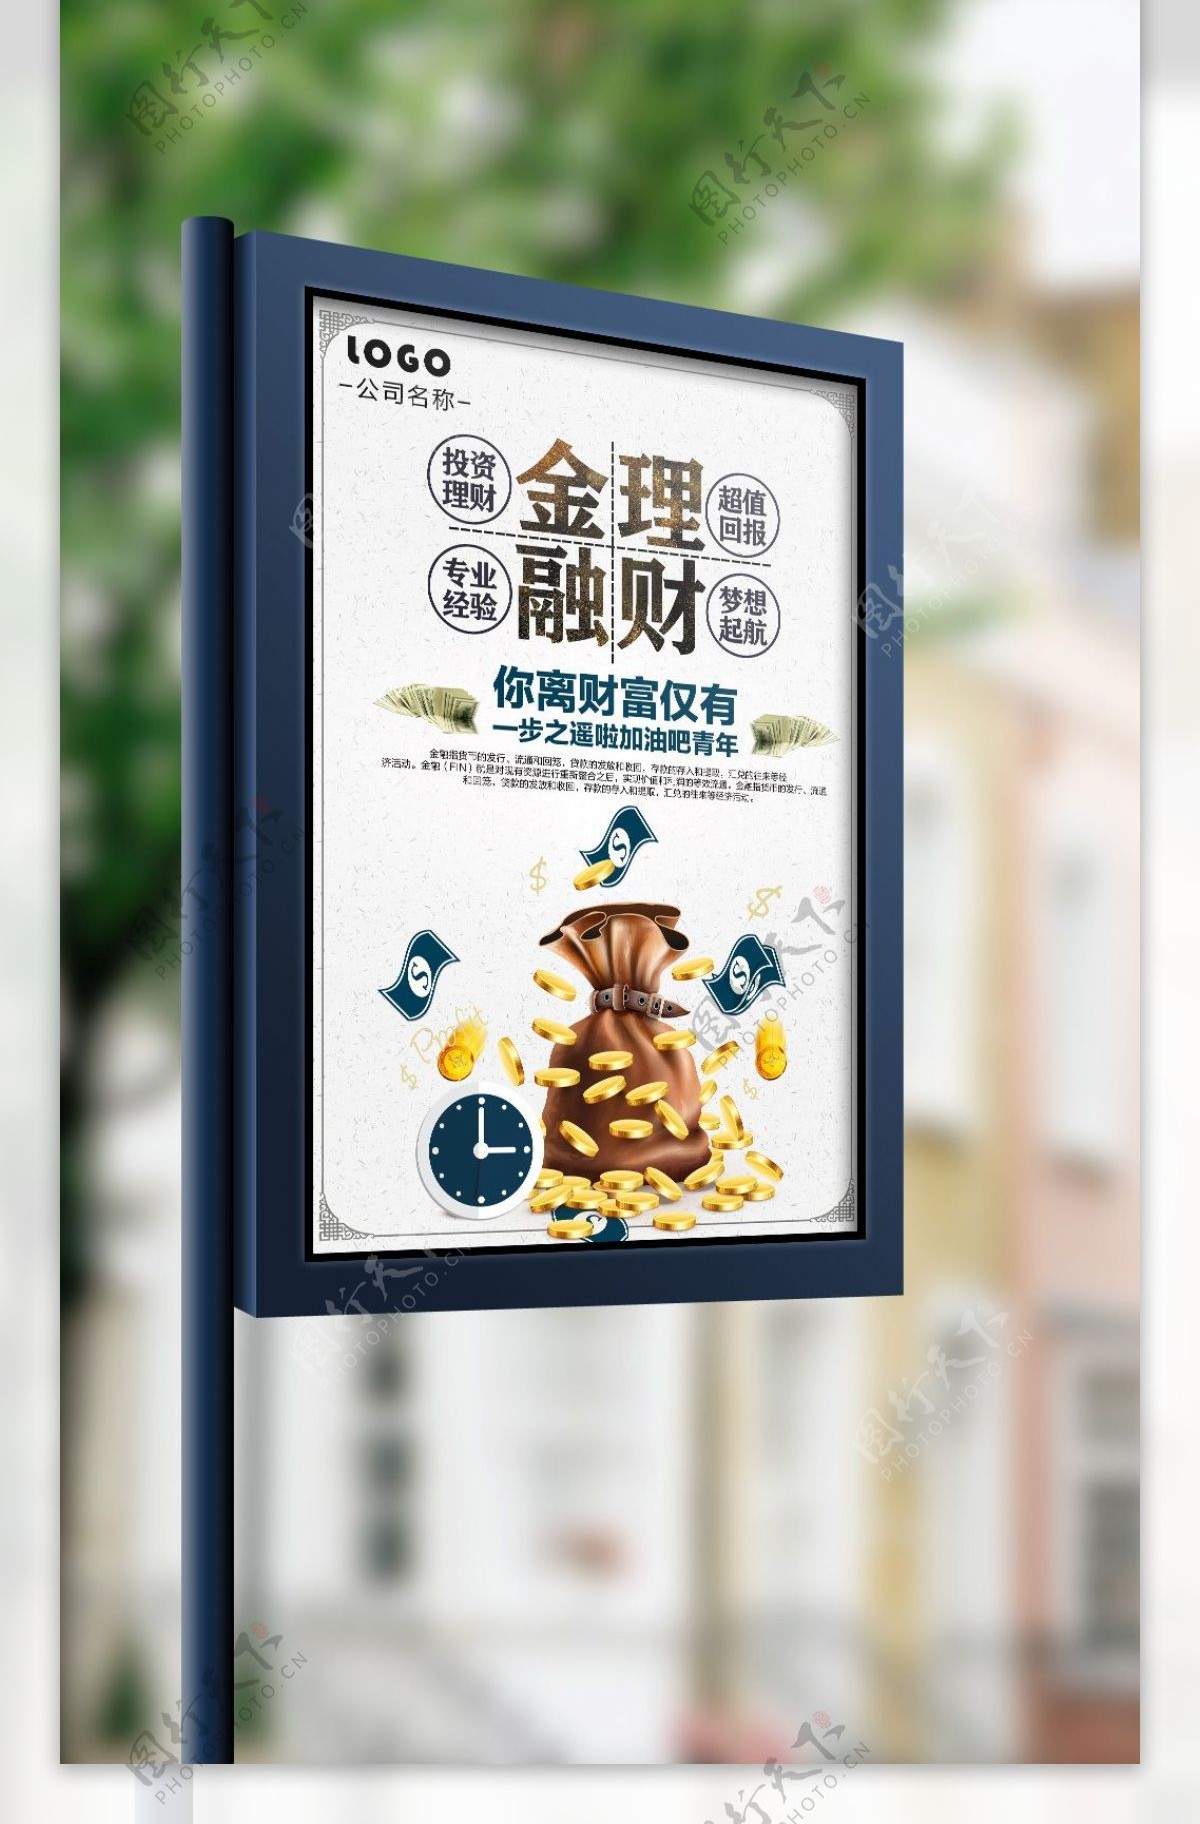 2017年白色简约中国风金融理财投资宣传海报